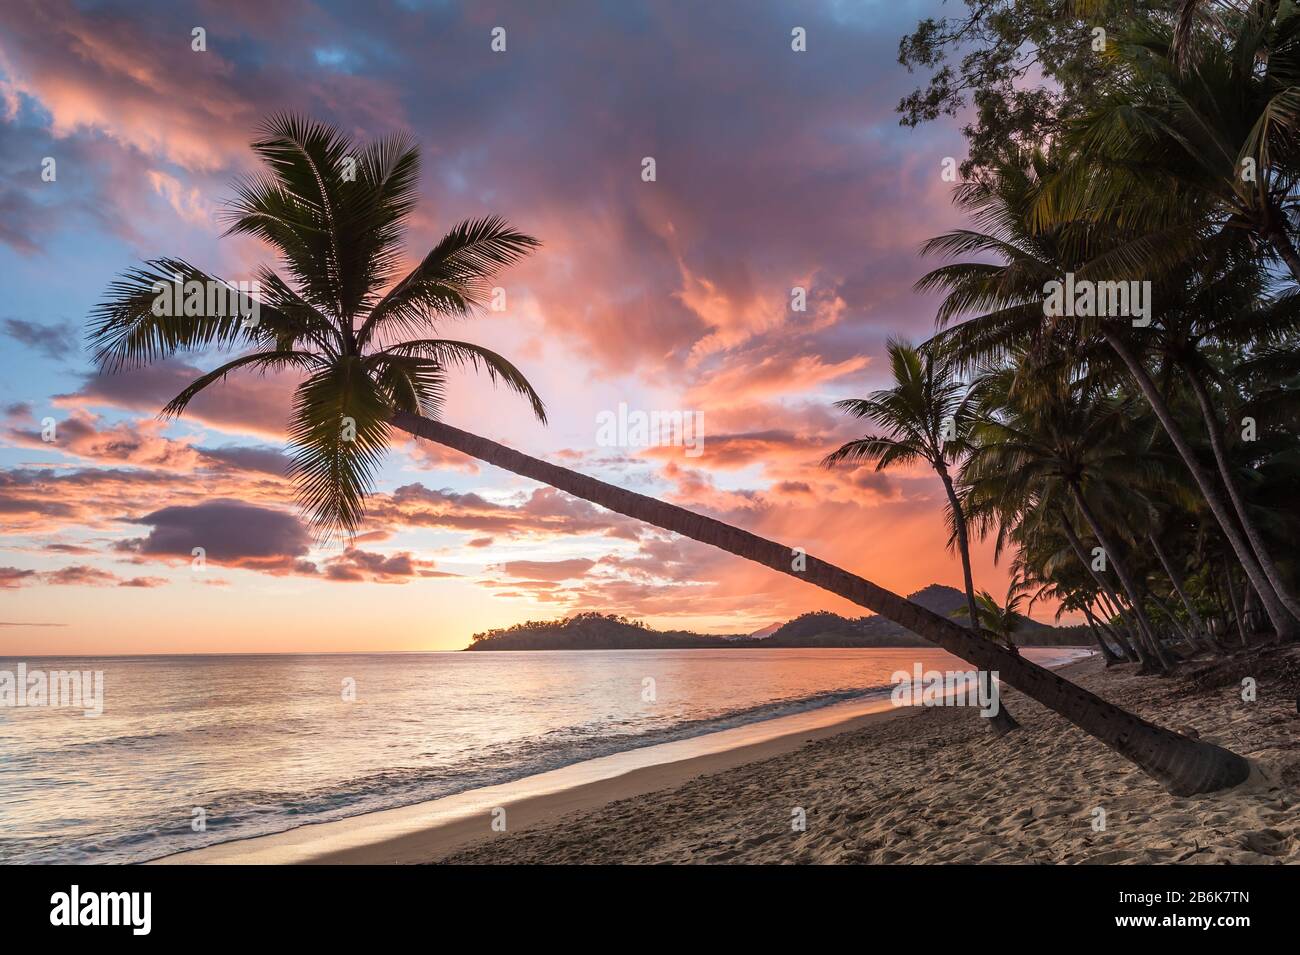 Eine wunderschöne, kultige Kokospalme hängt schräg über einer typischen tropischen Strandszene mit Insel im Hintergrund und Kokospalmenlinie. Stockfoto